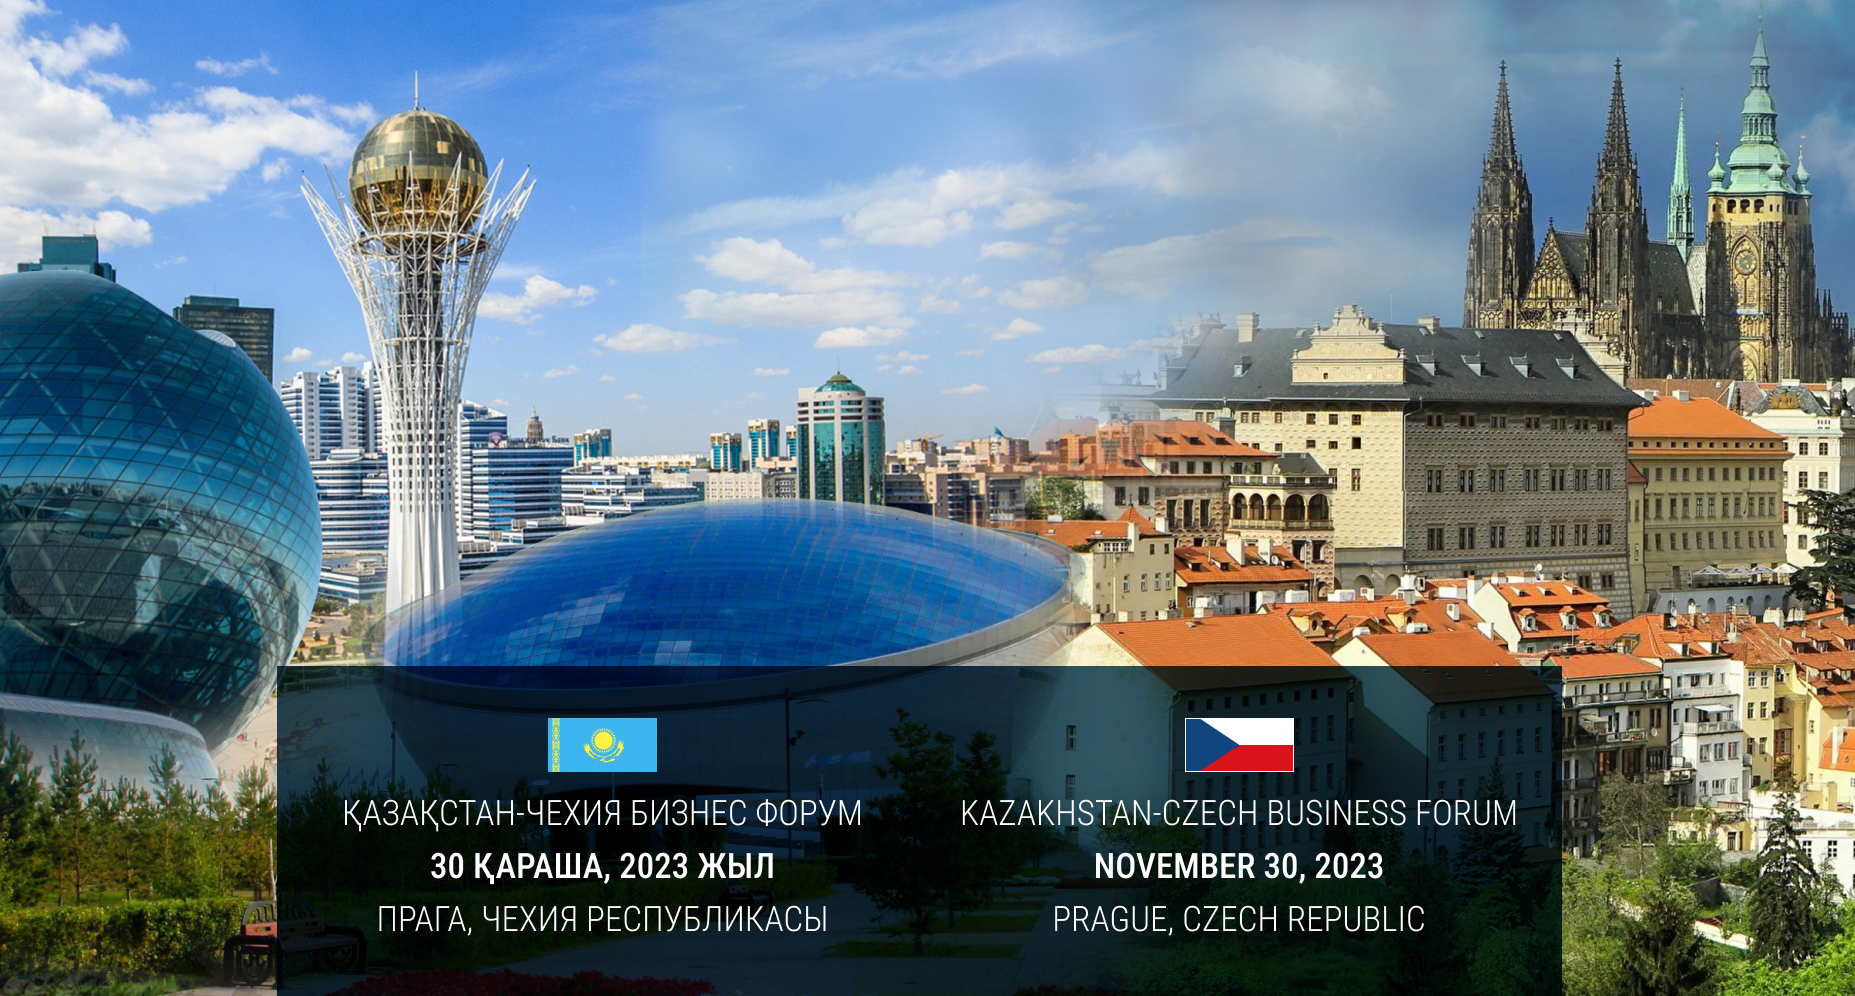 Kazakhstan-Czech Business Forum